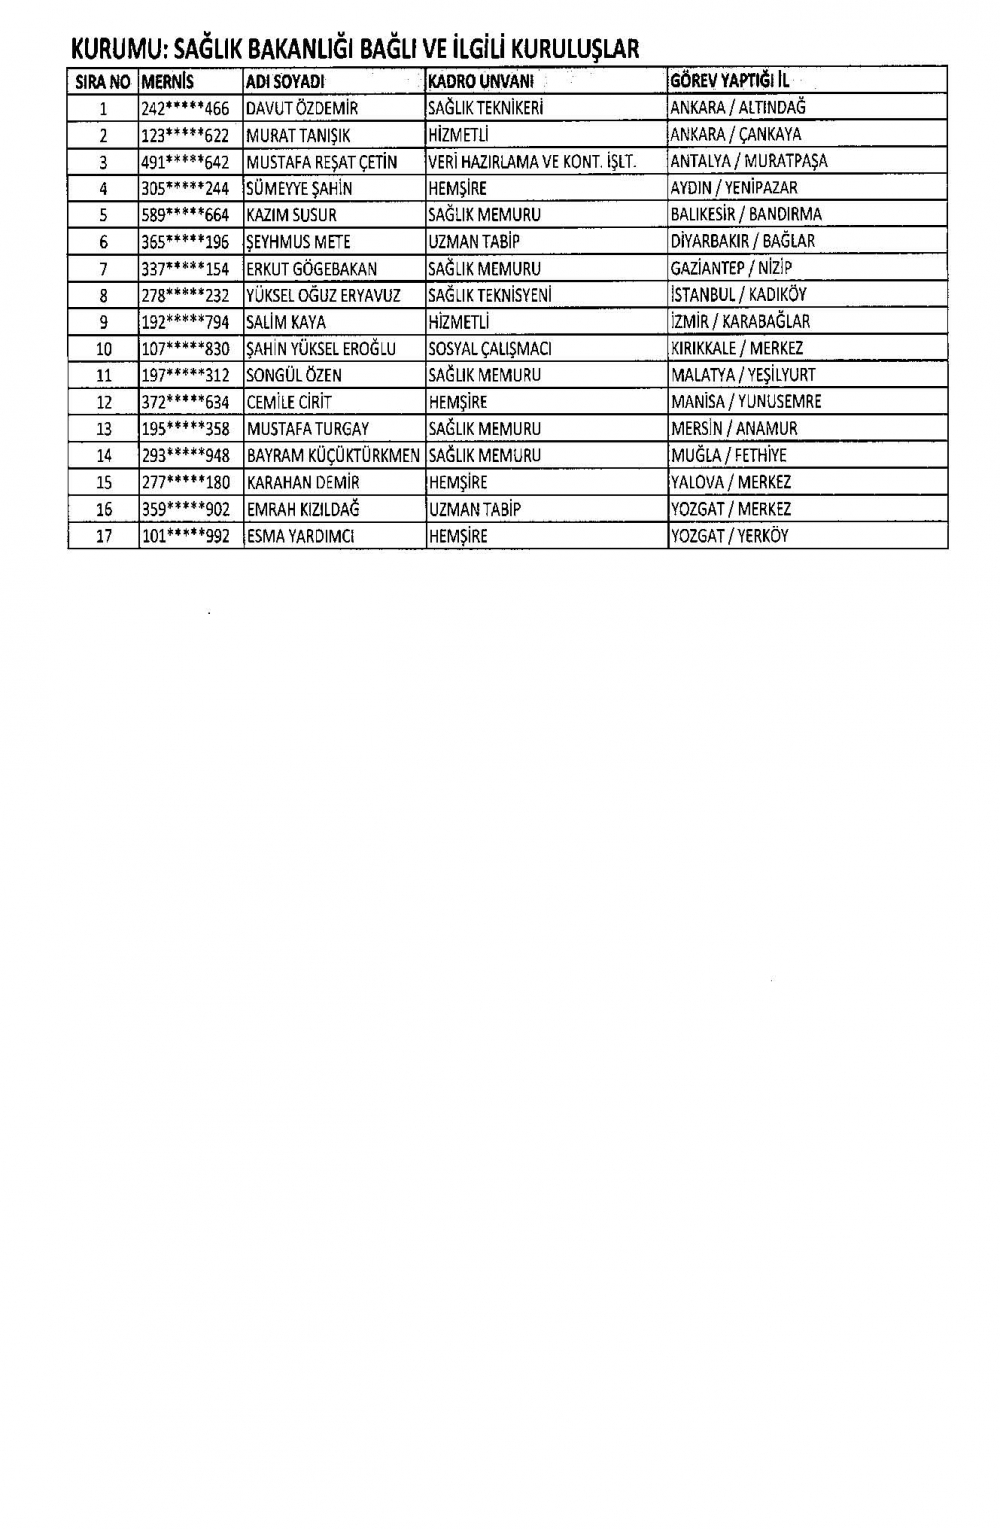 KHK ile görevine iade edilen personelin tam listesi 15 Temmuz 20